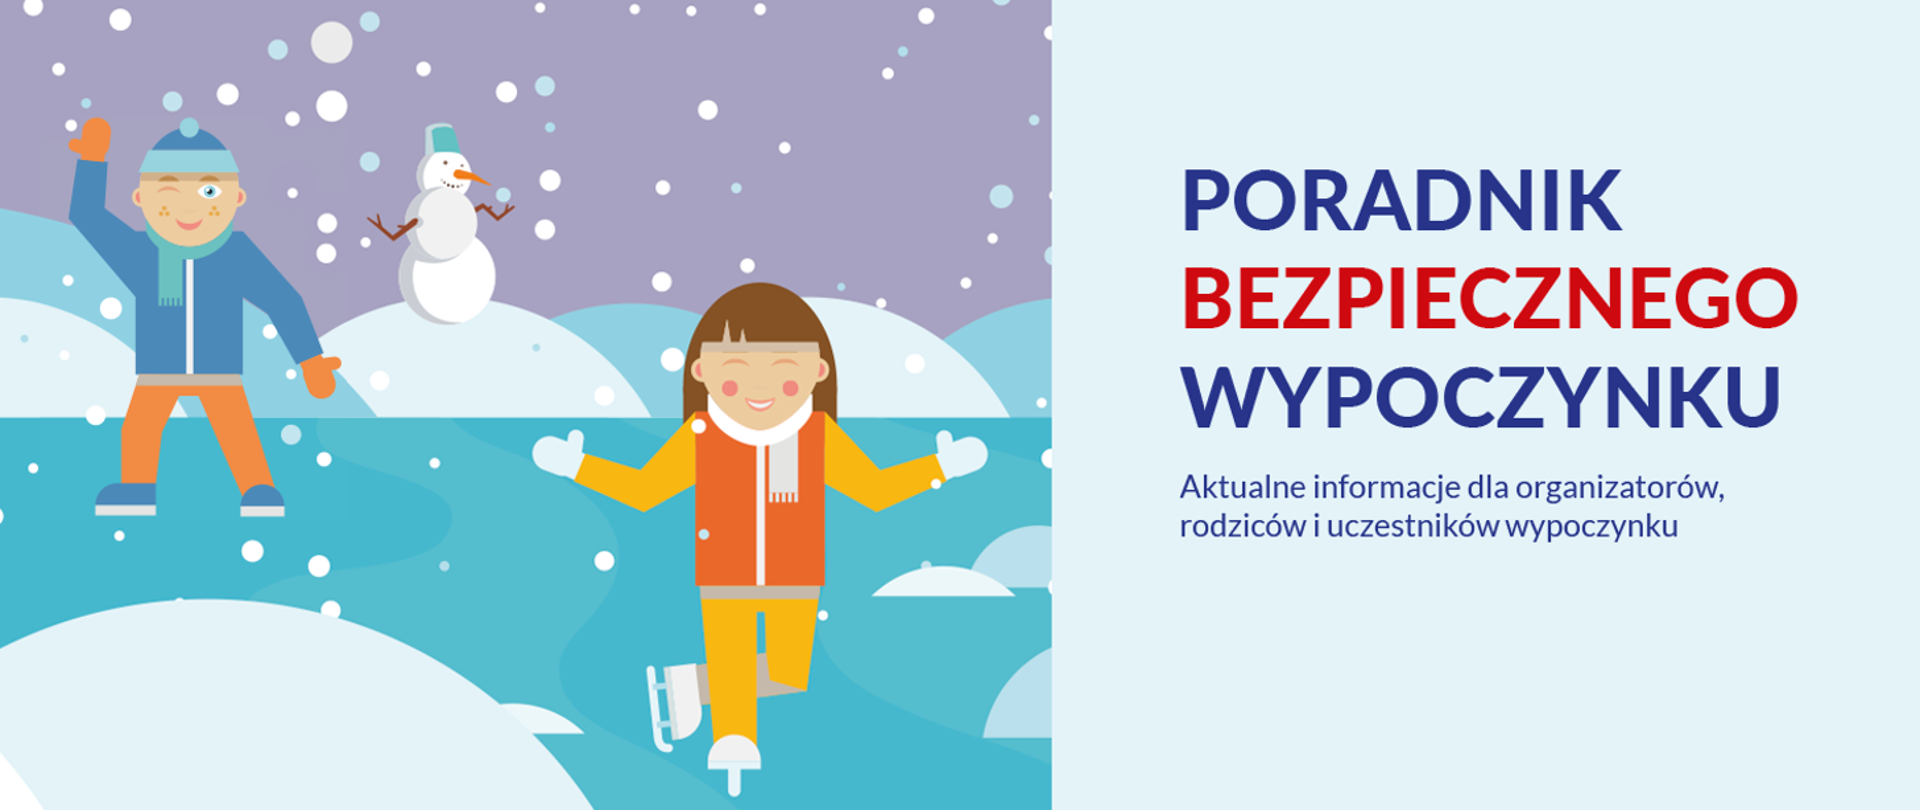 Po lewej stronie znajduje się grafika przedstawiająca chłopca i dziewczynkę na lodzie, w tle widzimy bałwana i sypiący śnieg. Po prawej stronie znajduje się informacja "poradnik bezpiecznego wypoczynku aktualne informacje dla organizatorów, rodziców i uczestników wypoczynku".